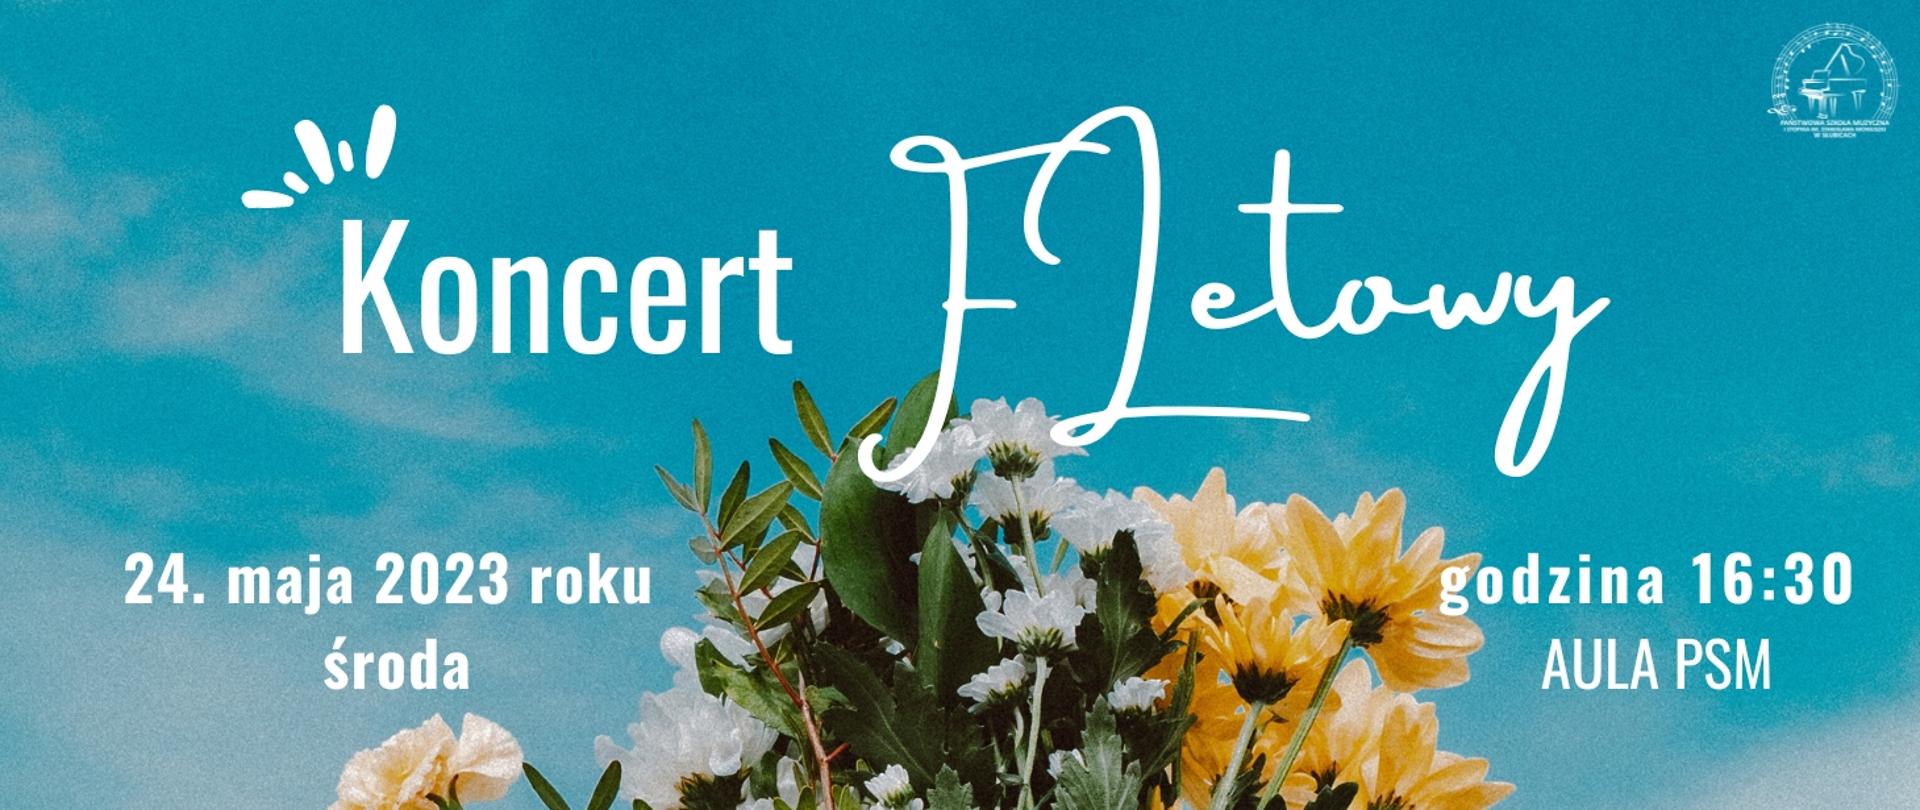 Na niebieskim tle zdjęcie kwiatów i tekst zapowiadający koncert fletowy.